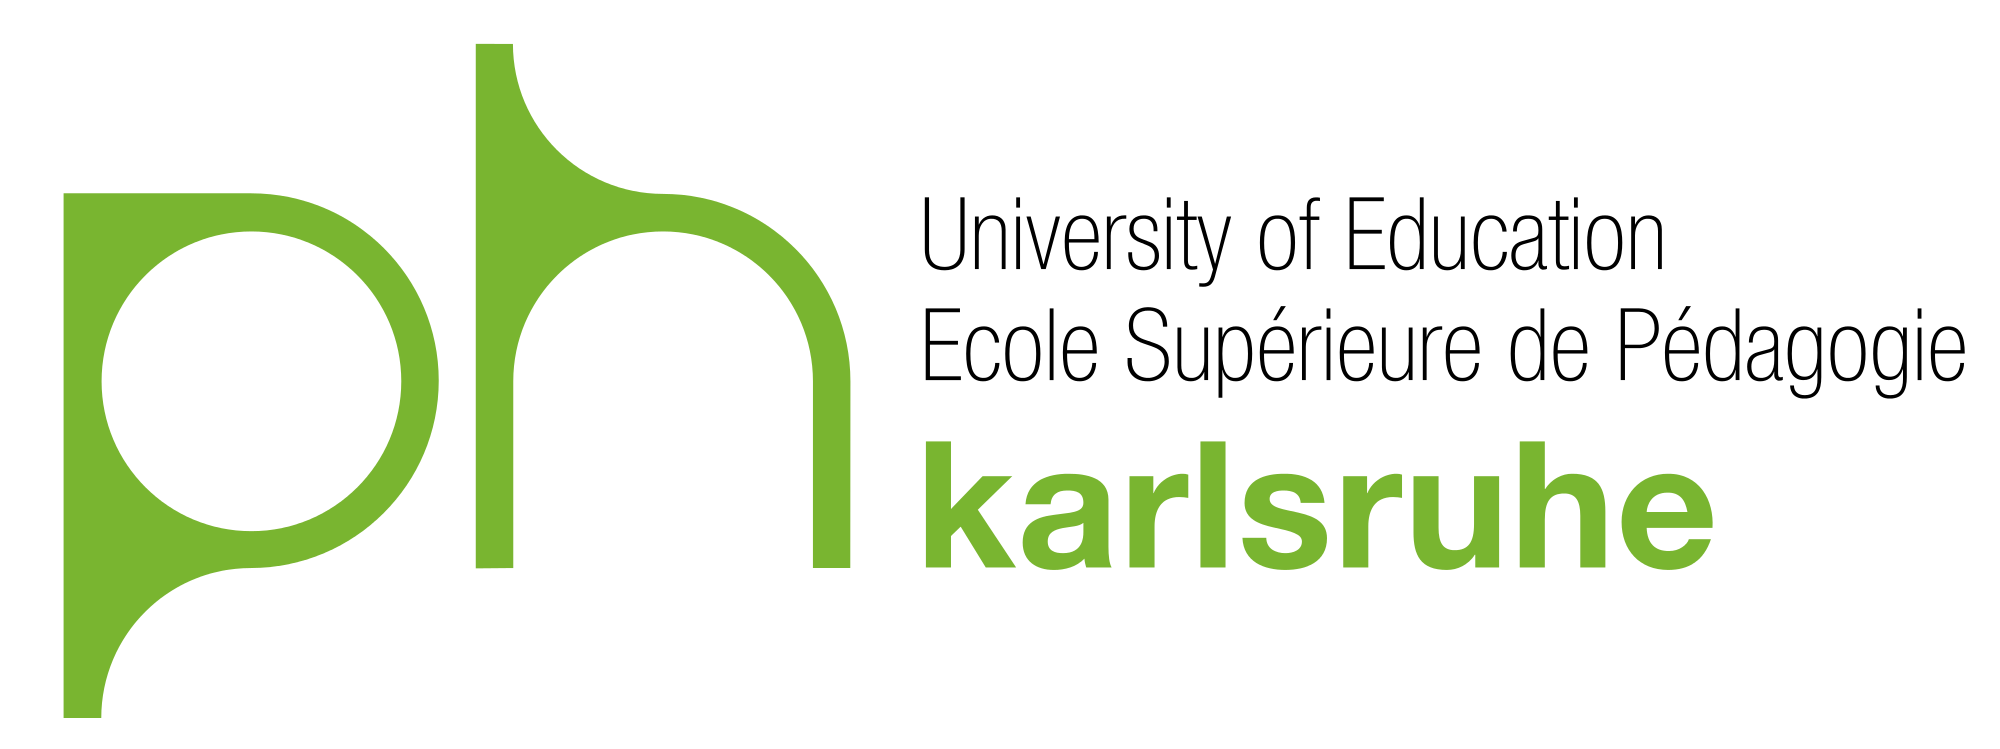 Zu sehen ist das Logo der PH Karlsruhe